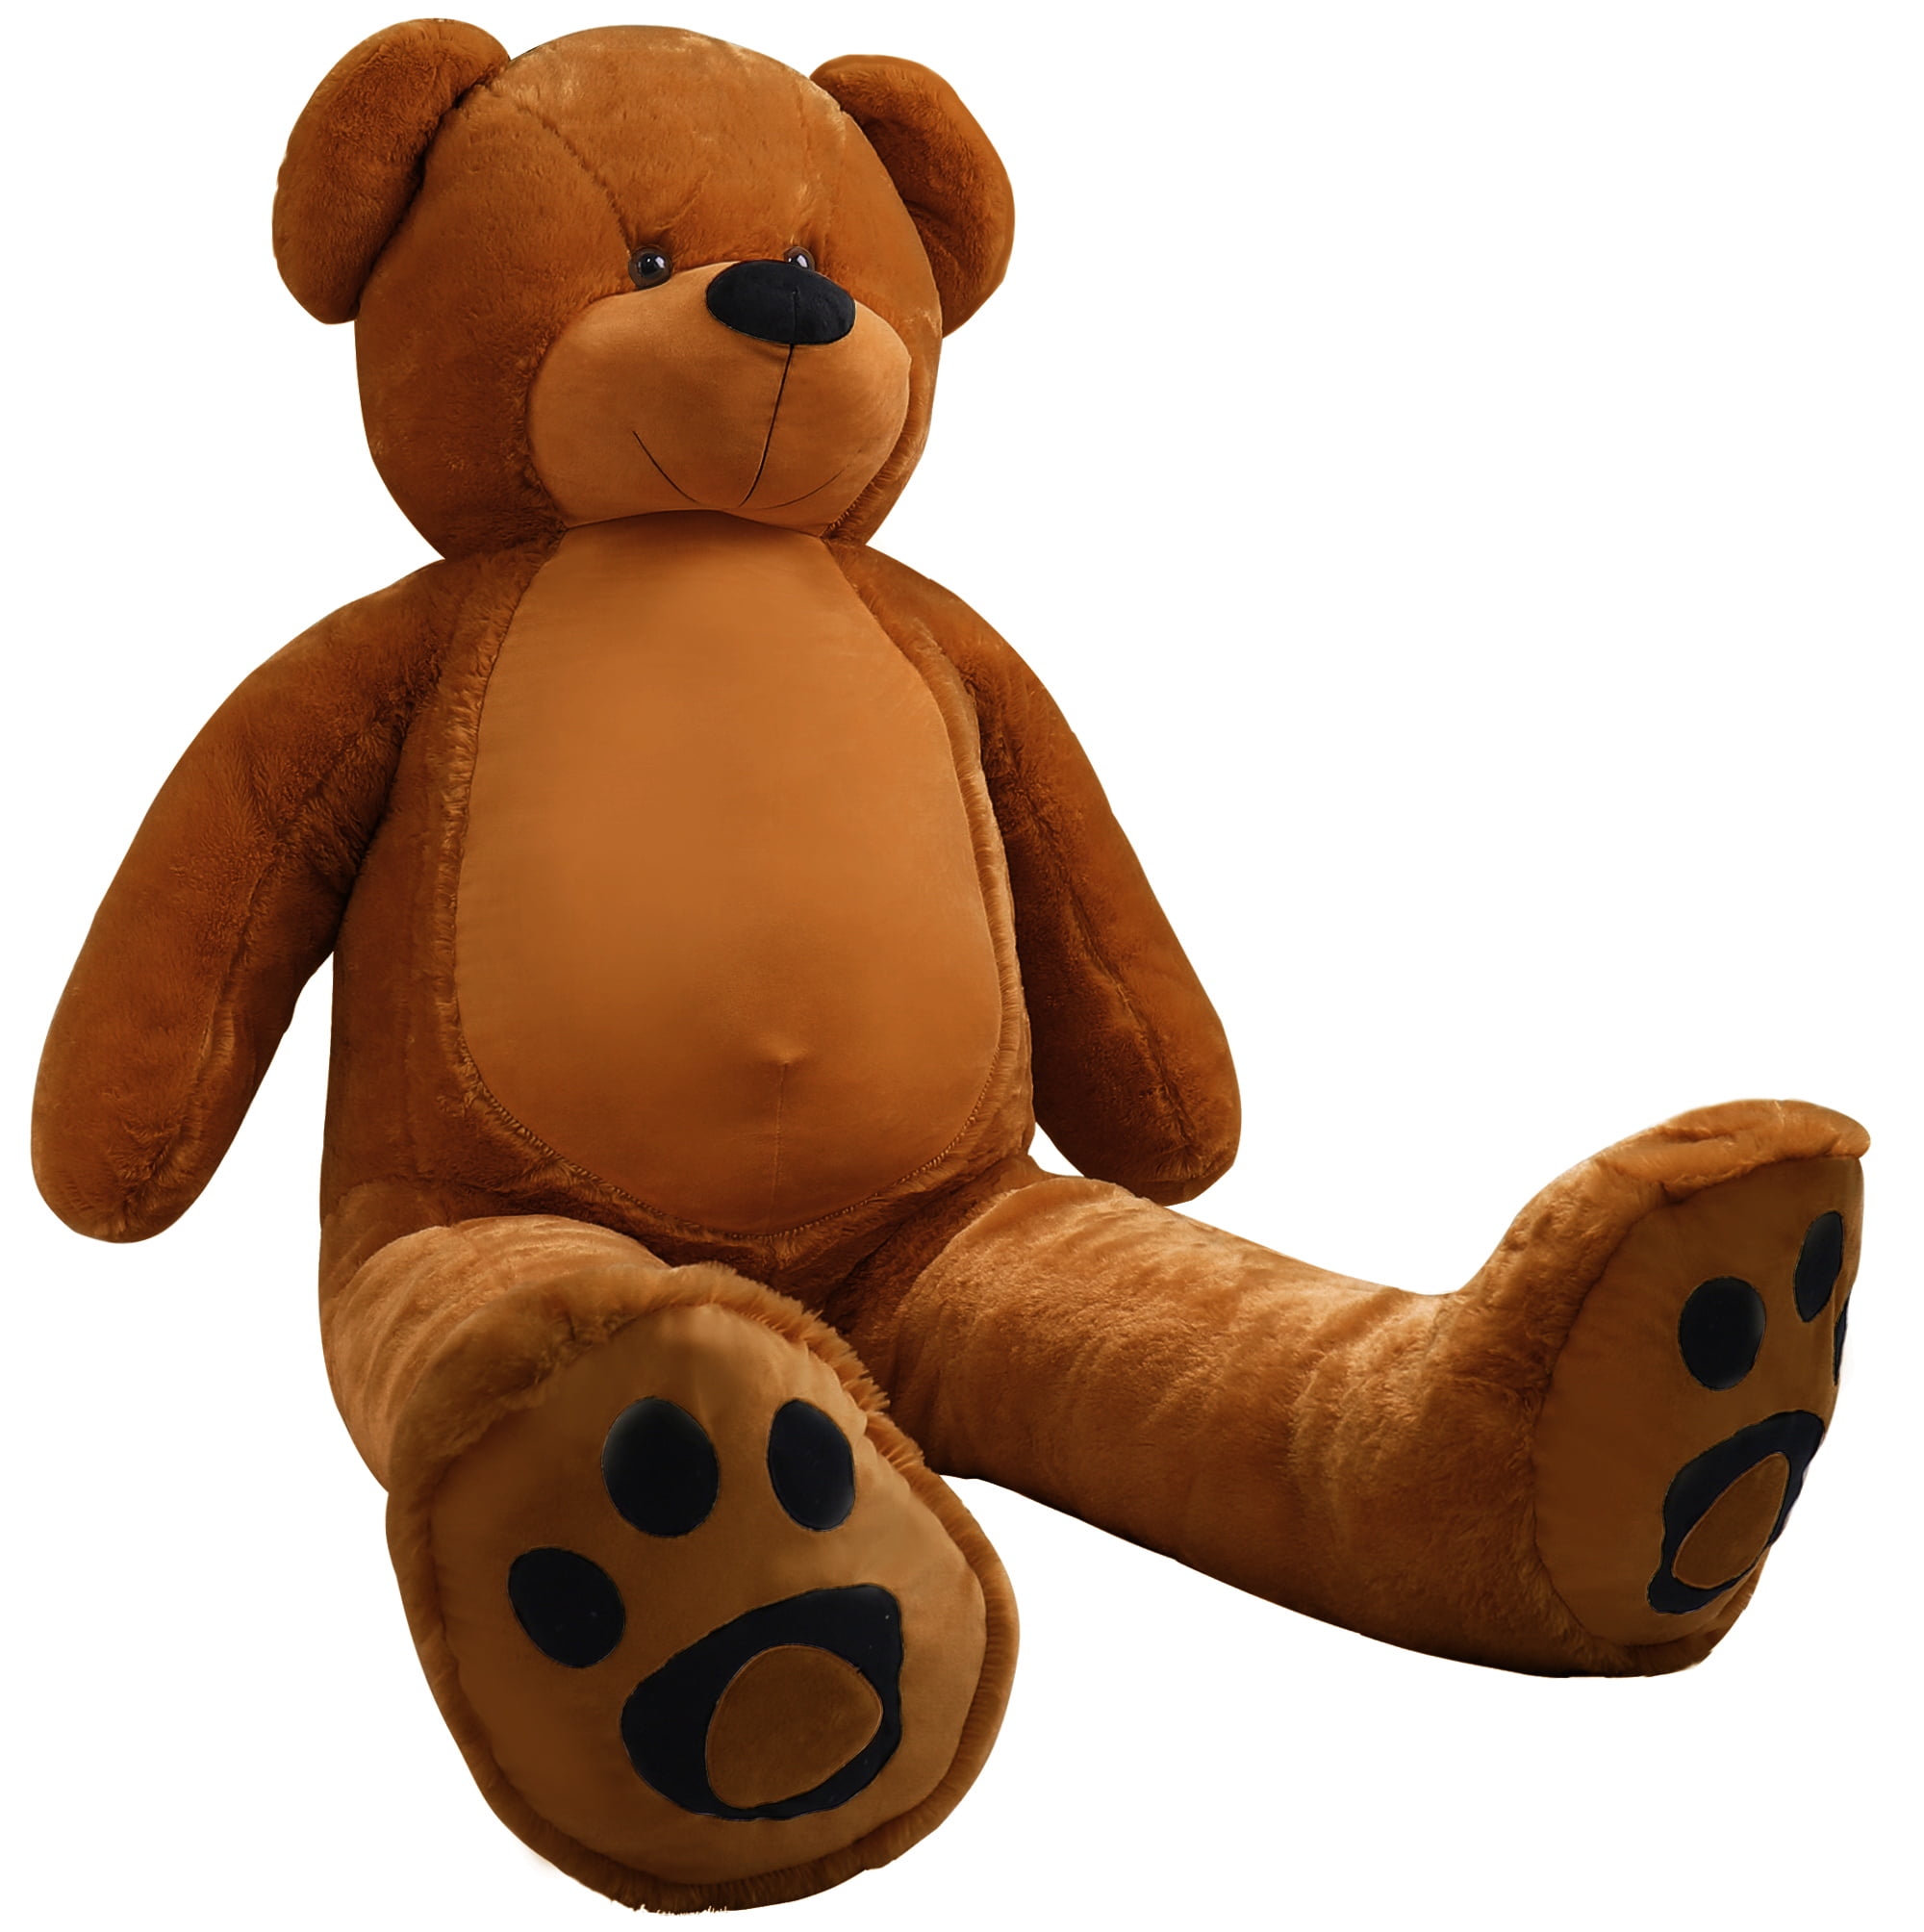 2019 Mercedes Benz Novelty Teddy Bear Plush Toy